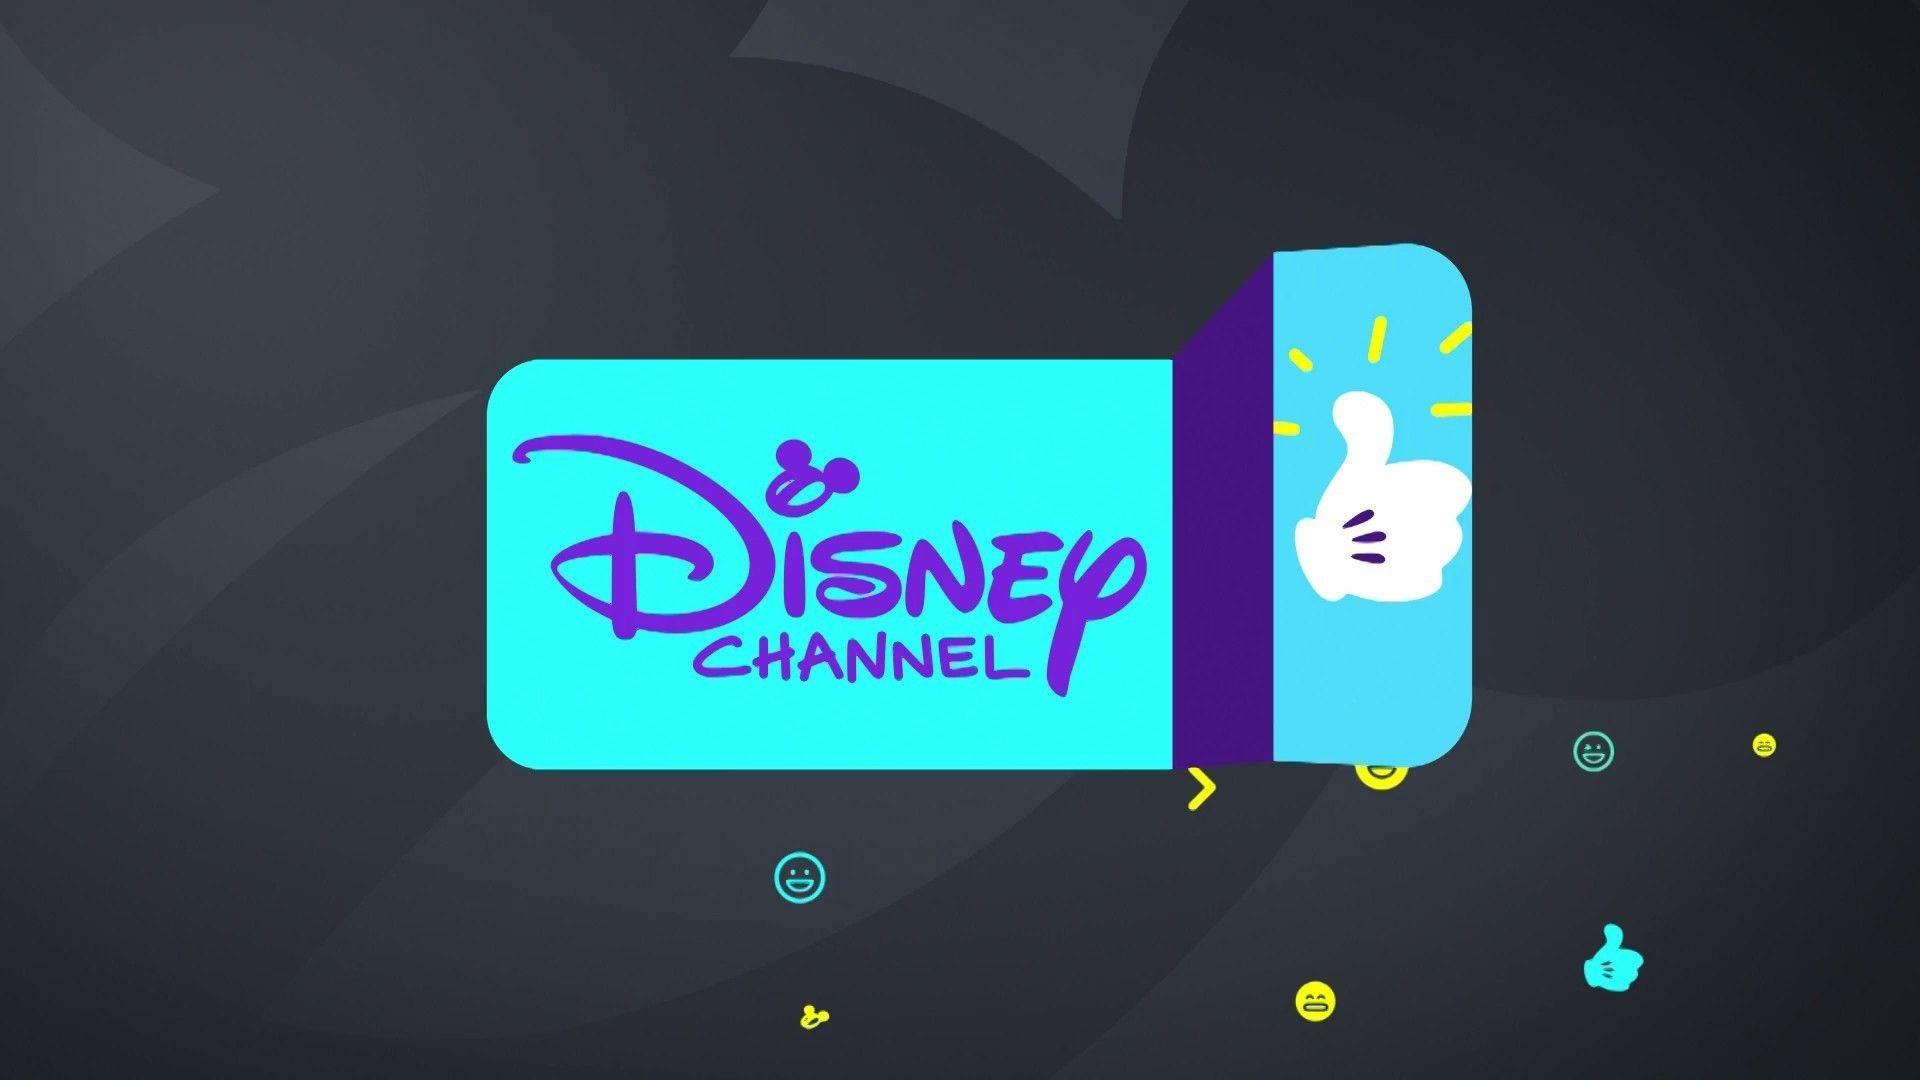 Disney Channel Wallpaper